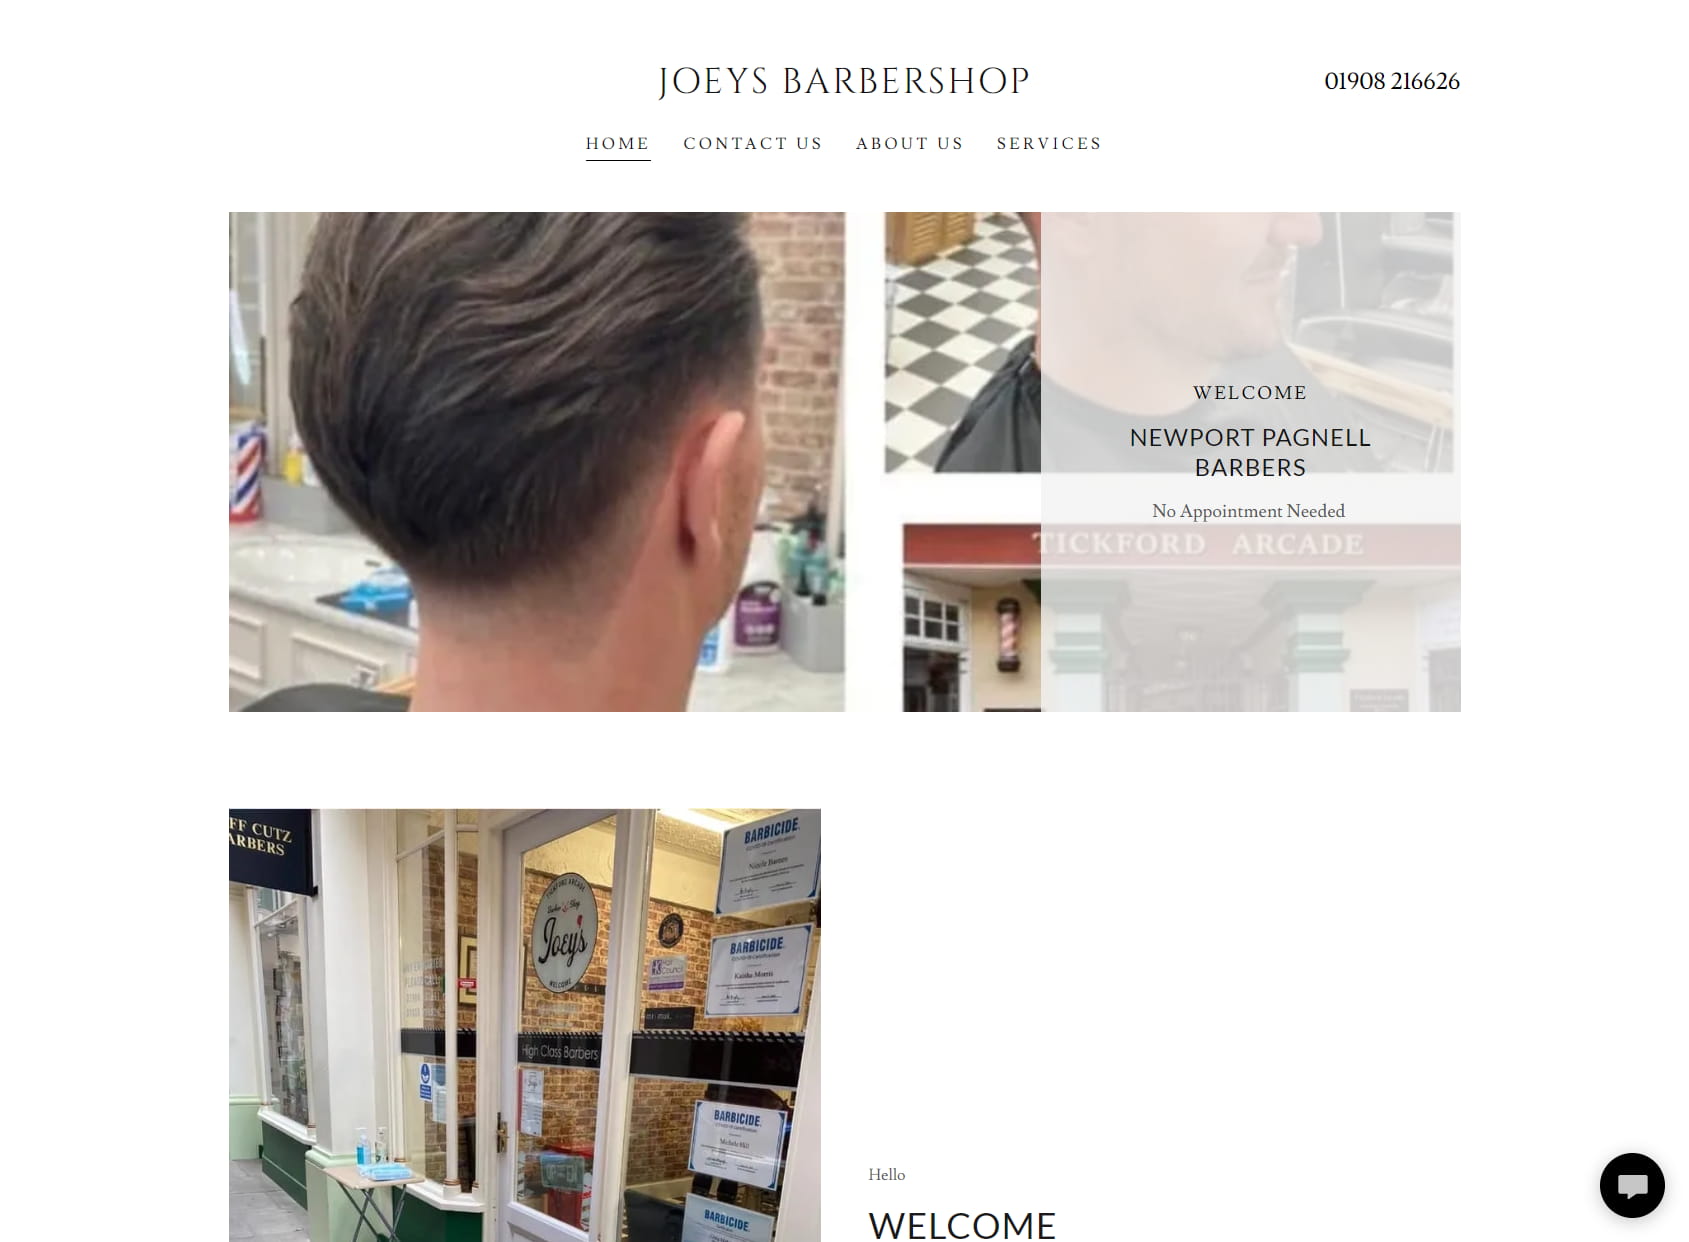 Joey's Barbershop